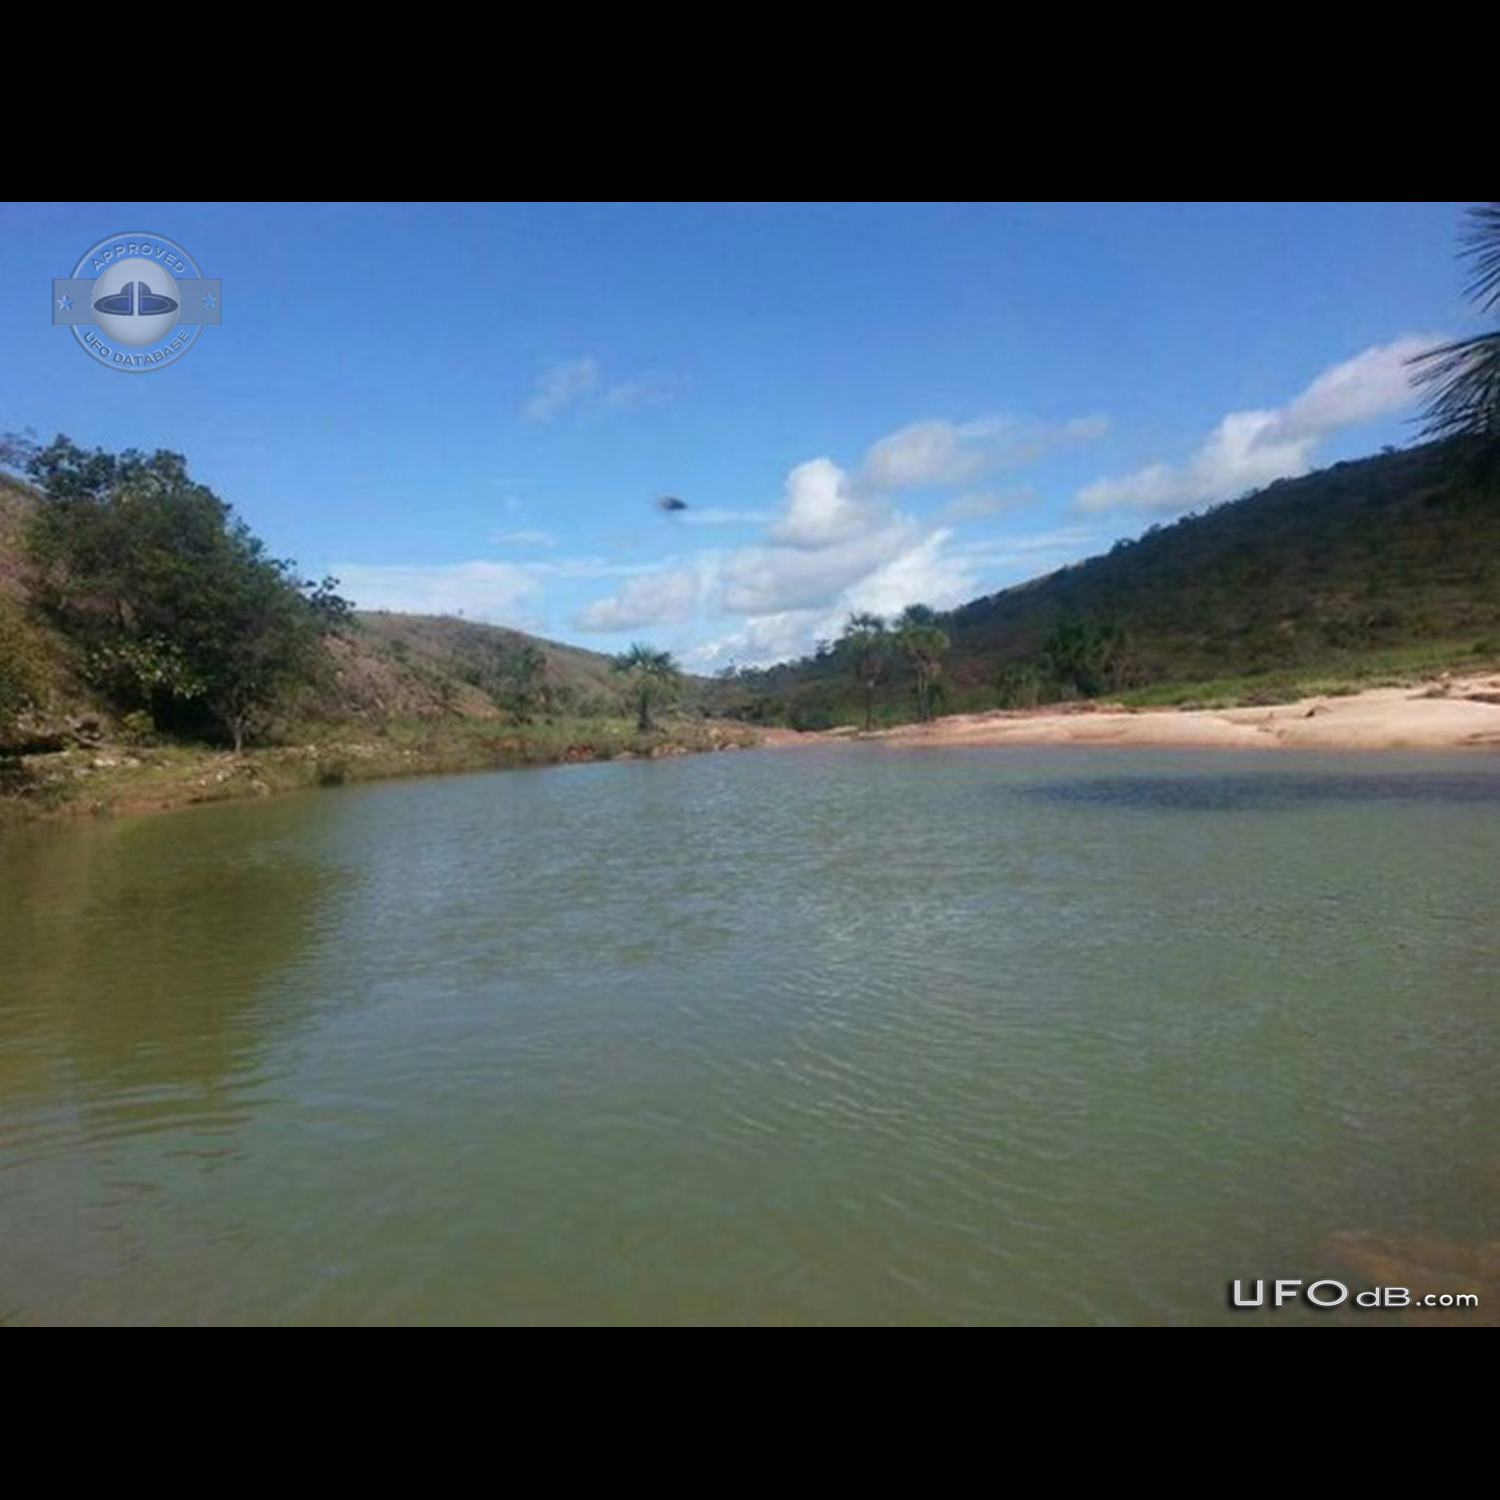 UFO in Raposa Serra do Sol, Roraima in Brazil - July 12 2014 UFO Picture #591-1